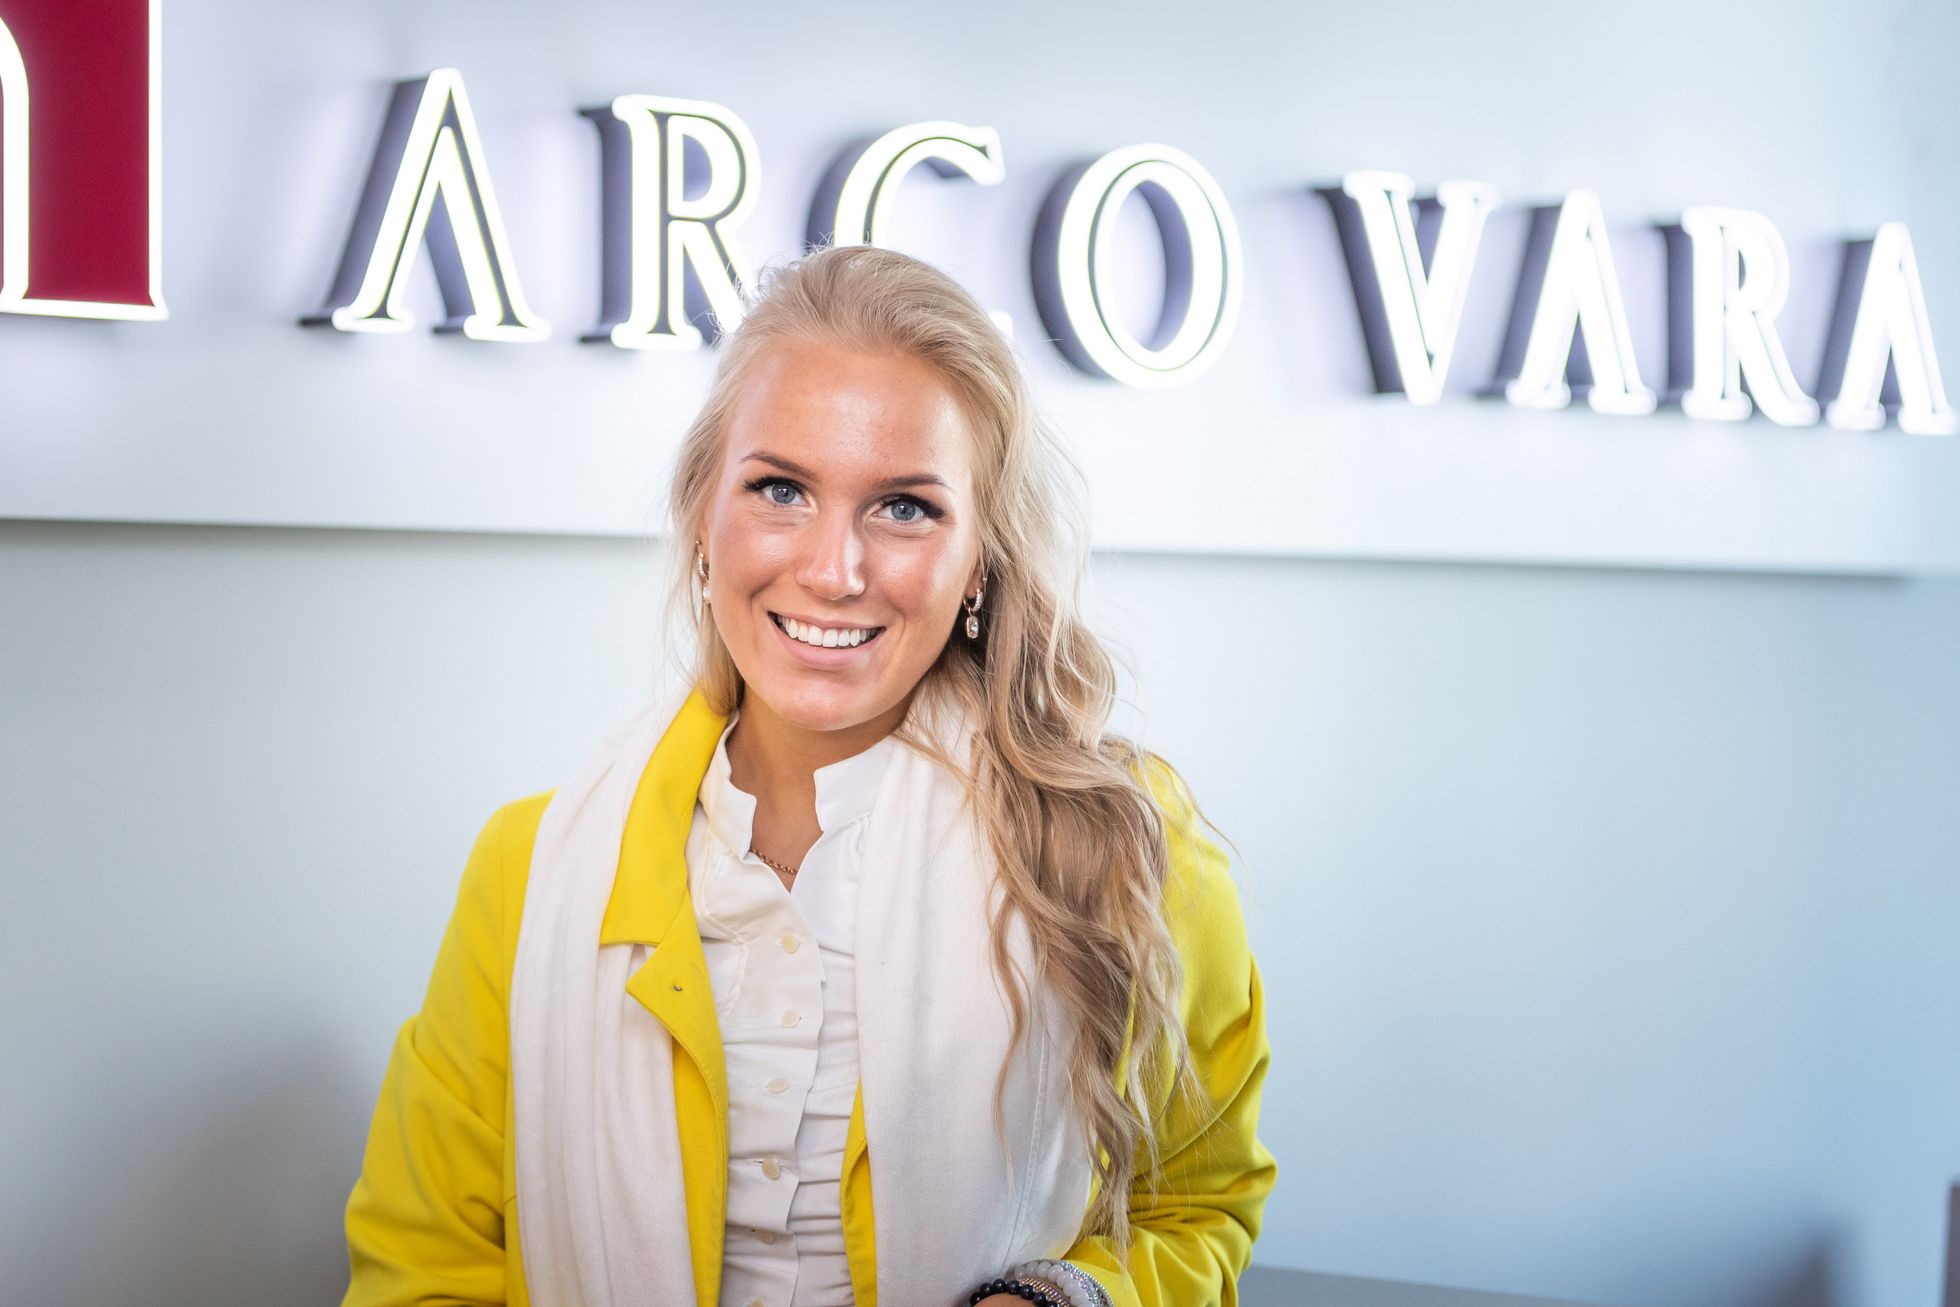 Arco Vara kinnisvaramaakler Sandra Alliksaar.